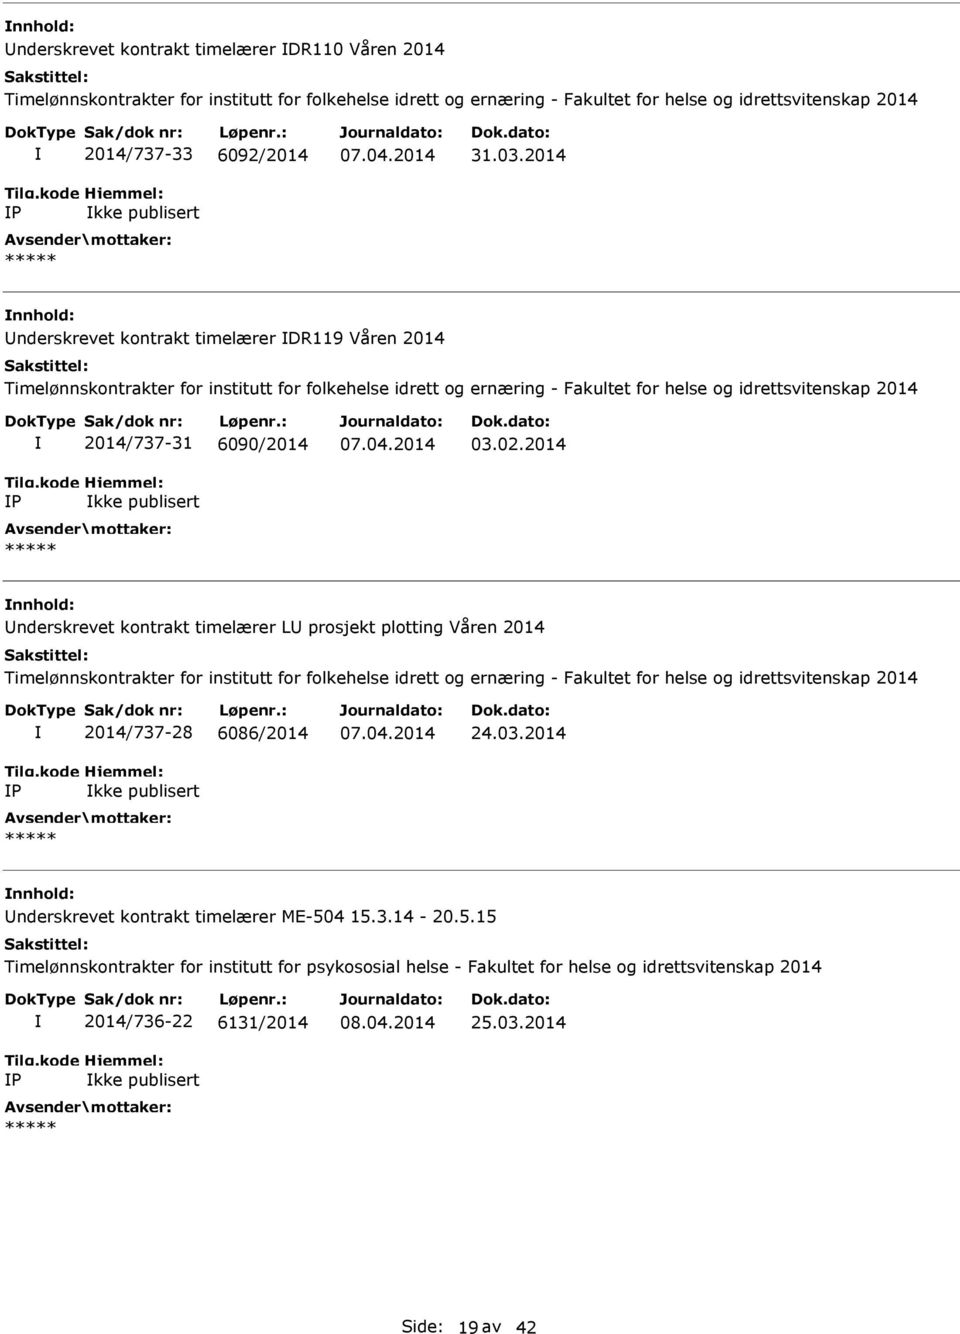 2014 nderskrevet kontrakt timelærer DR119 Våren 2014 Timelønnskontrakter for institutt for folkehelse idrett og ernæring - Fakultet for helse og idrettsvitenskap 2014 2014/737-31 6090/2014 kke